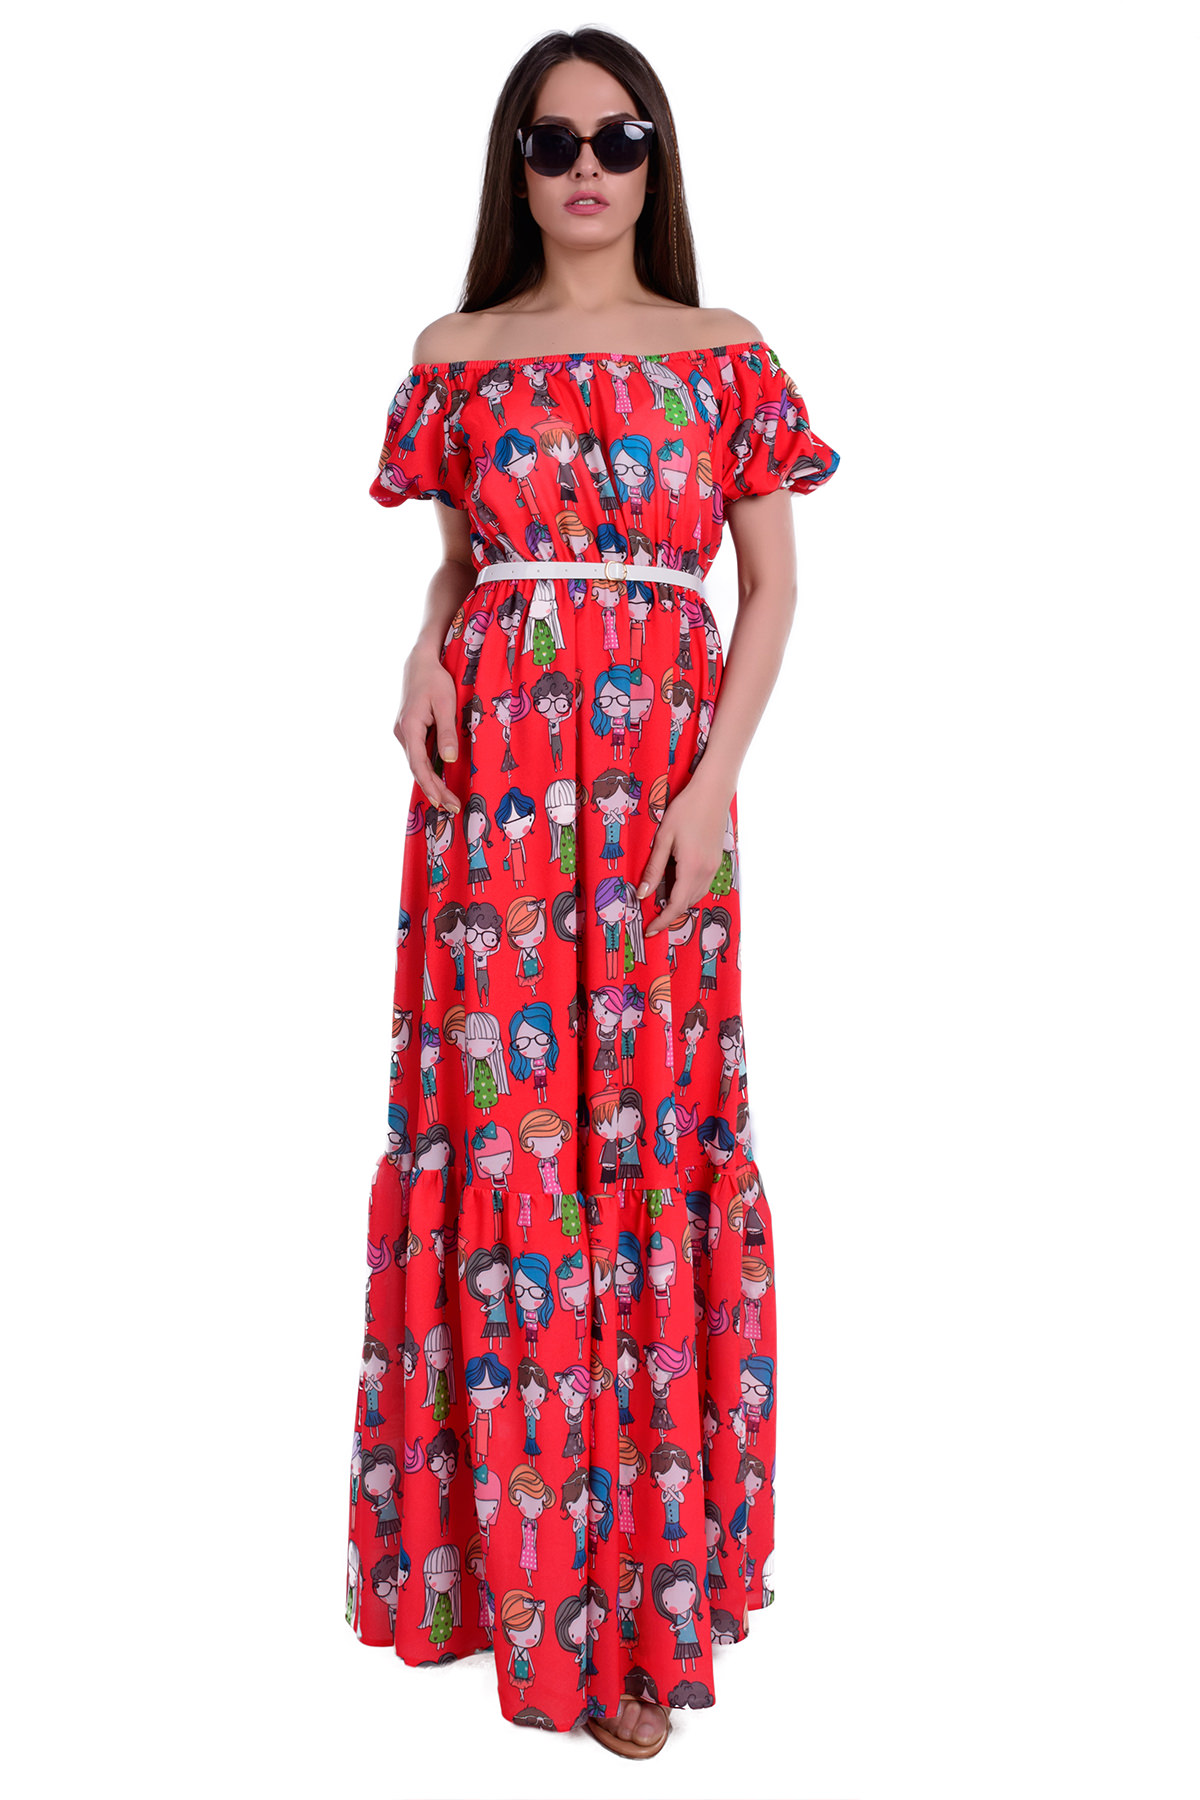 Купить платья оптом от производителя Платье Сен-Тропе лайт принт креп шифон